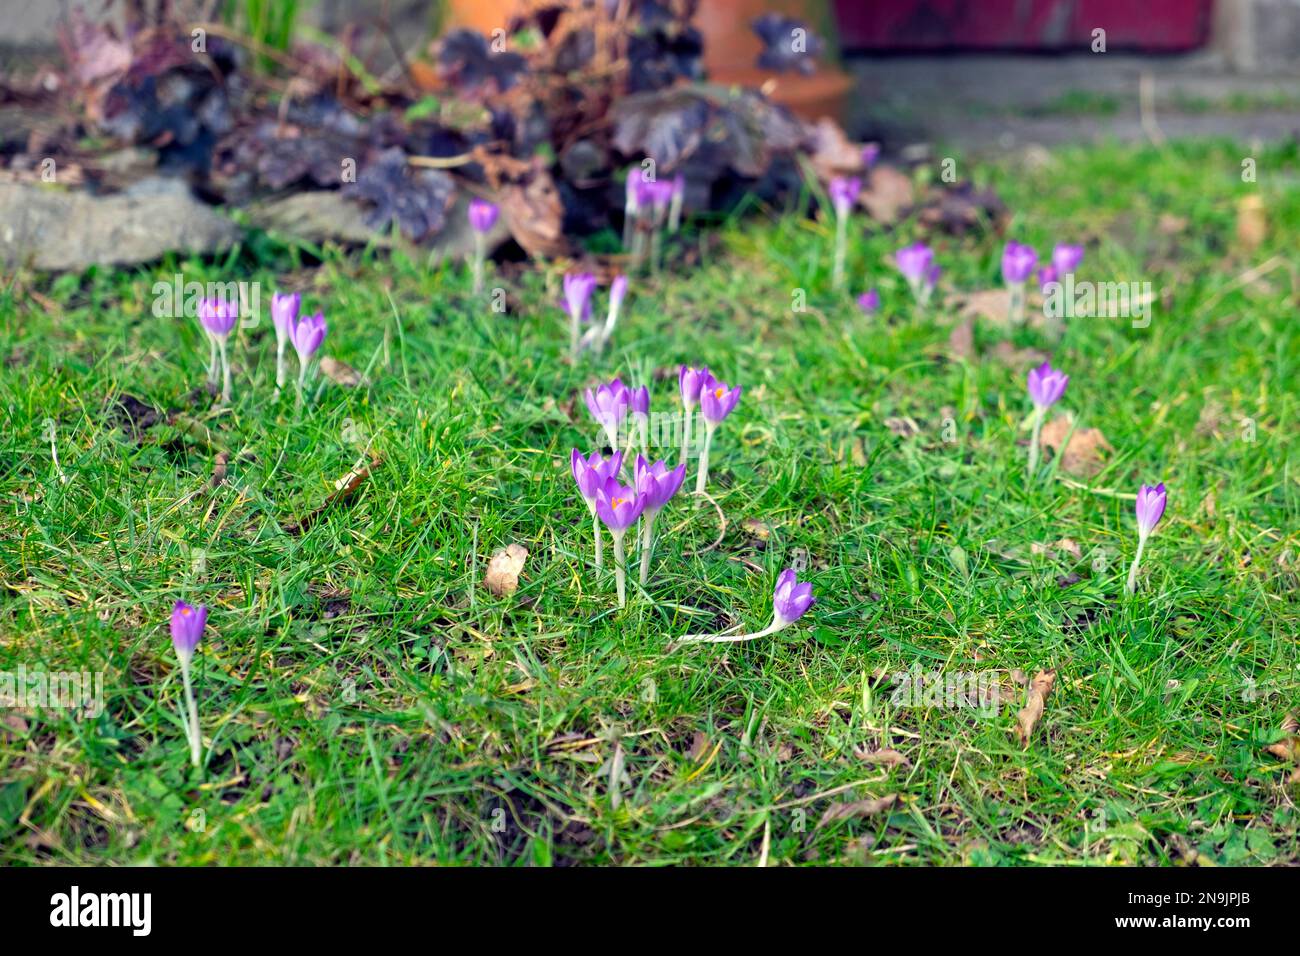 Crocus pourpre crocuses en fleur bulbes de printemps en hiver croissant planté dans l'herbe de pelouse Carmarthenshire pays de Galles Royaume-Uni Grande-Bretagne KATHY DEWITT Banque D'Images